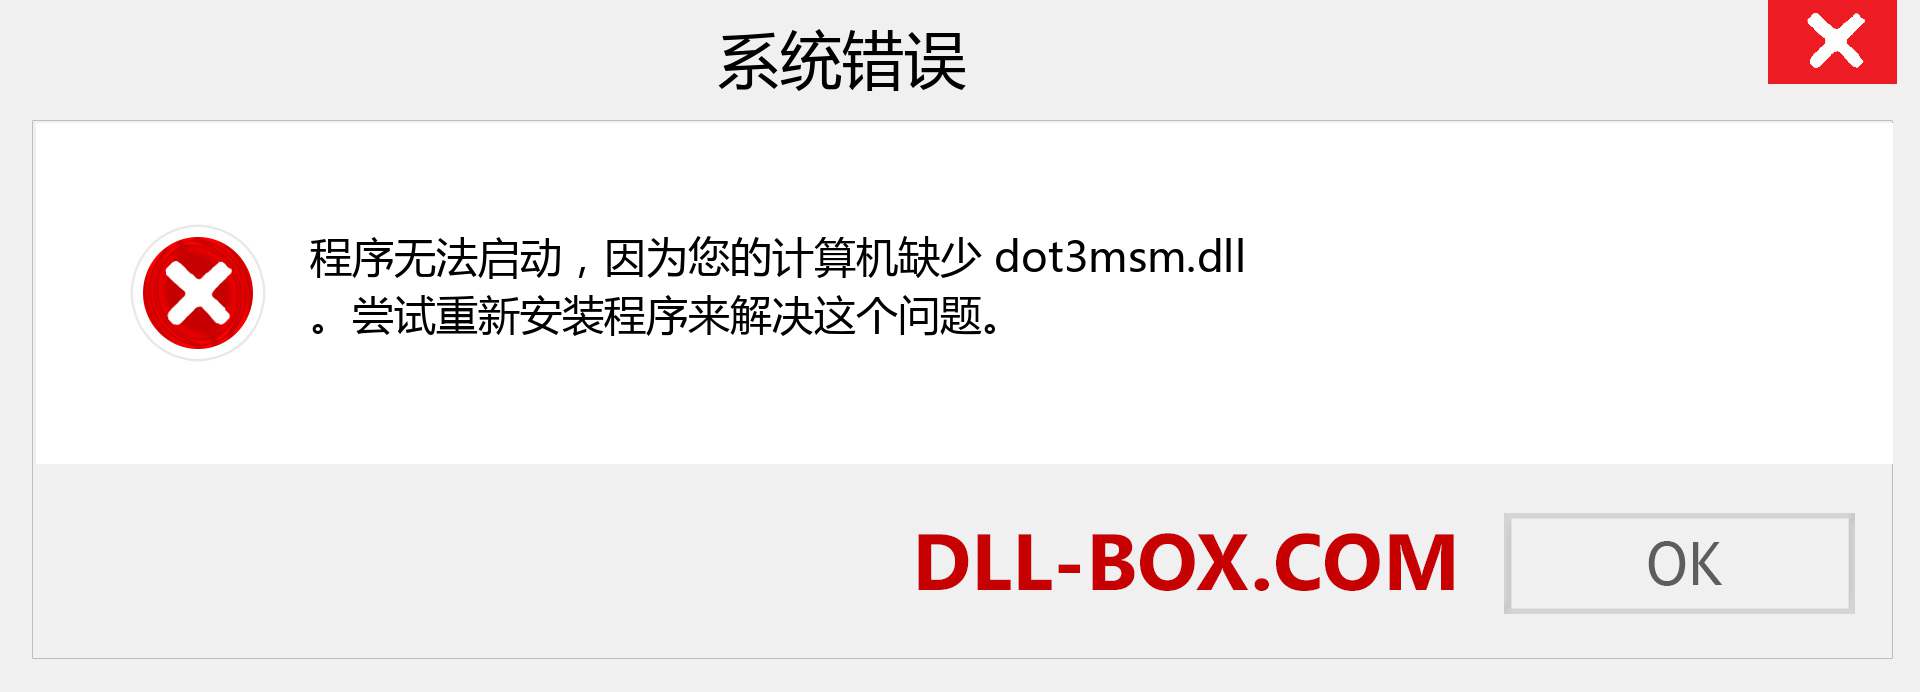 dot3msm.dll 文件丢失？。 适用于 Windows 7、8、10 的下载 - 修复 Windows、照片、图像上的 dot3msm dll 丢失错误